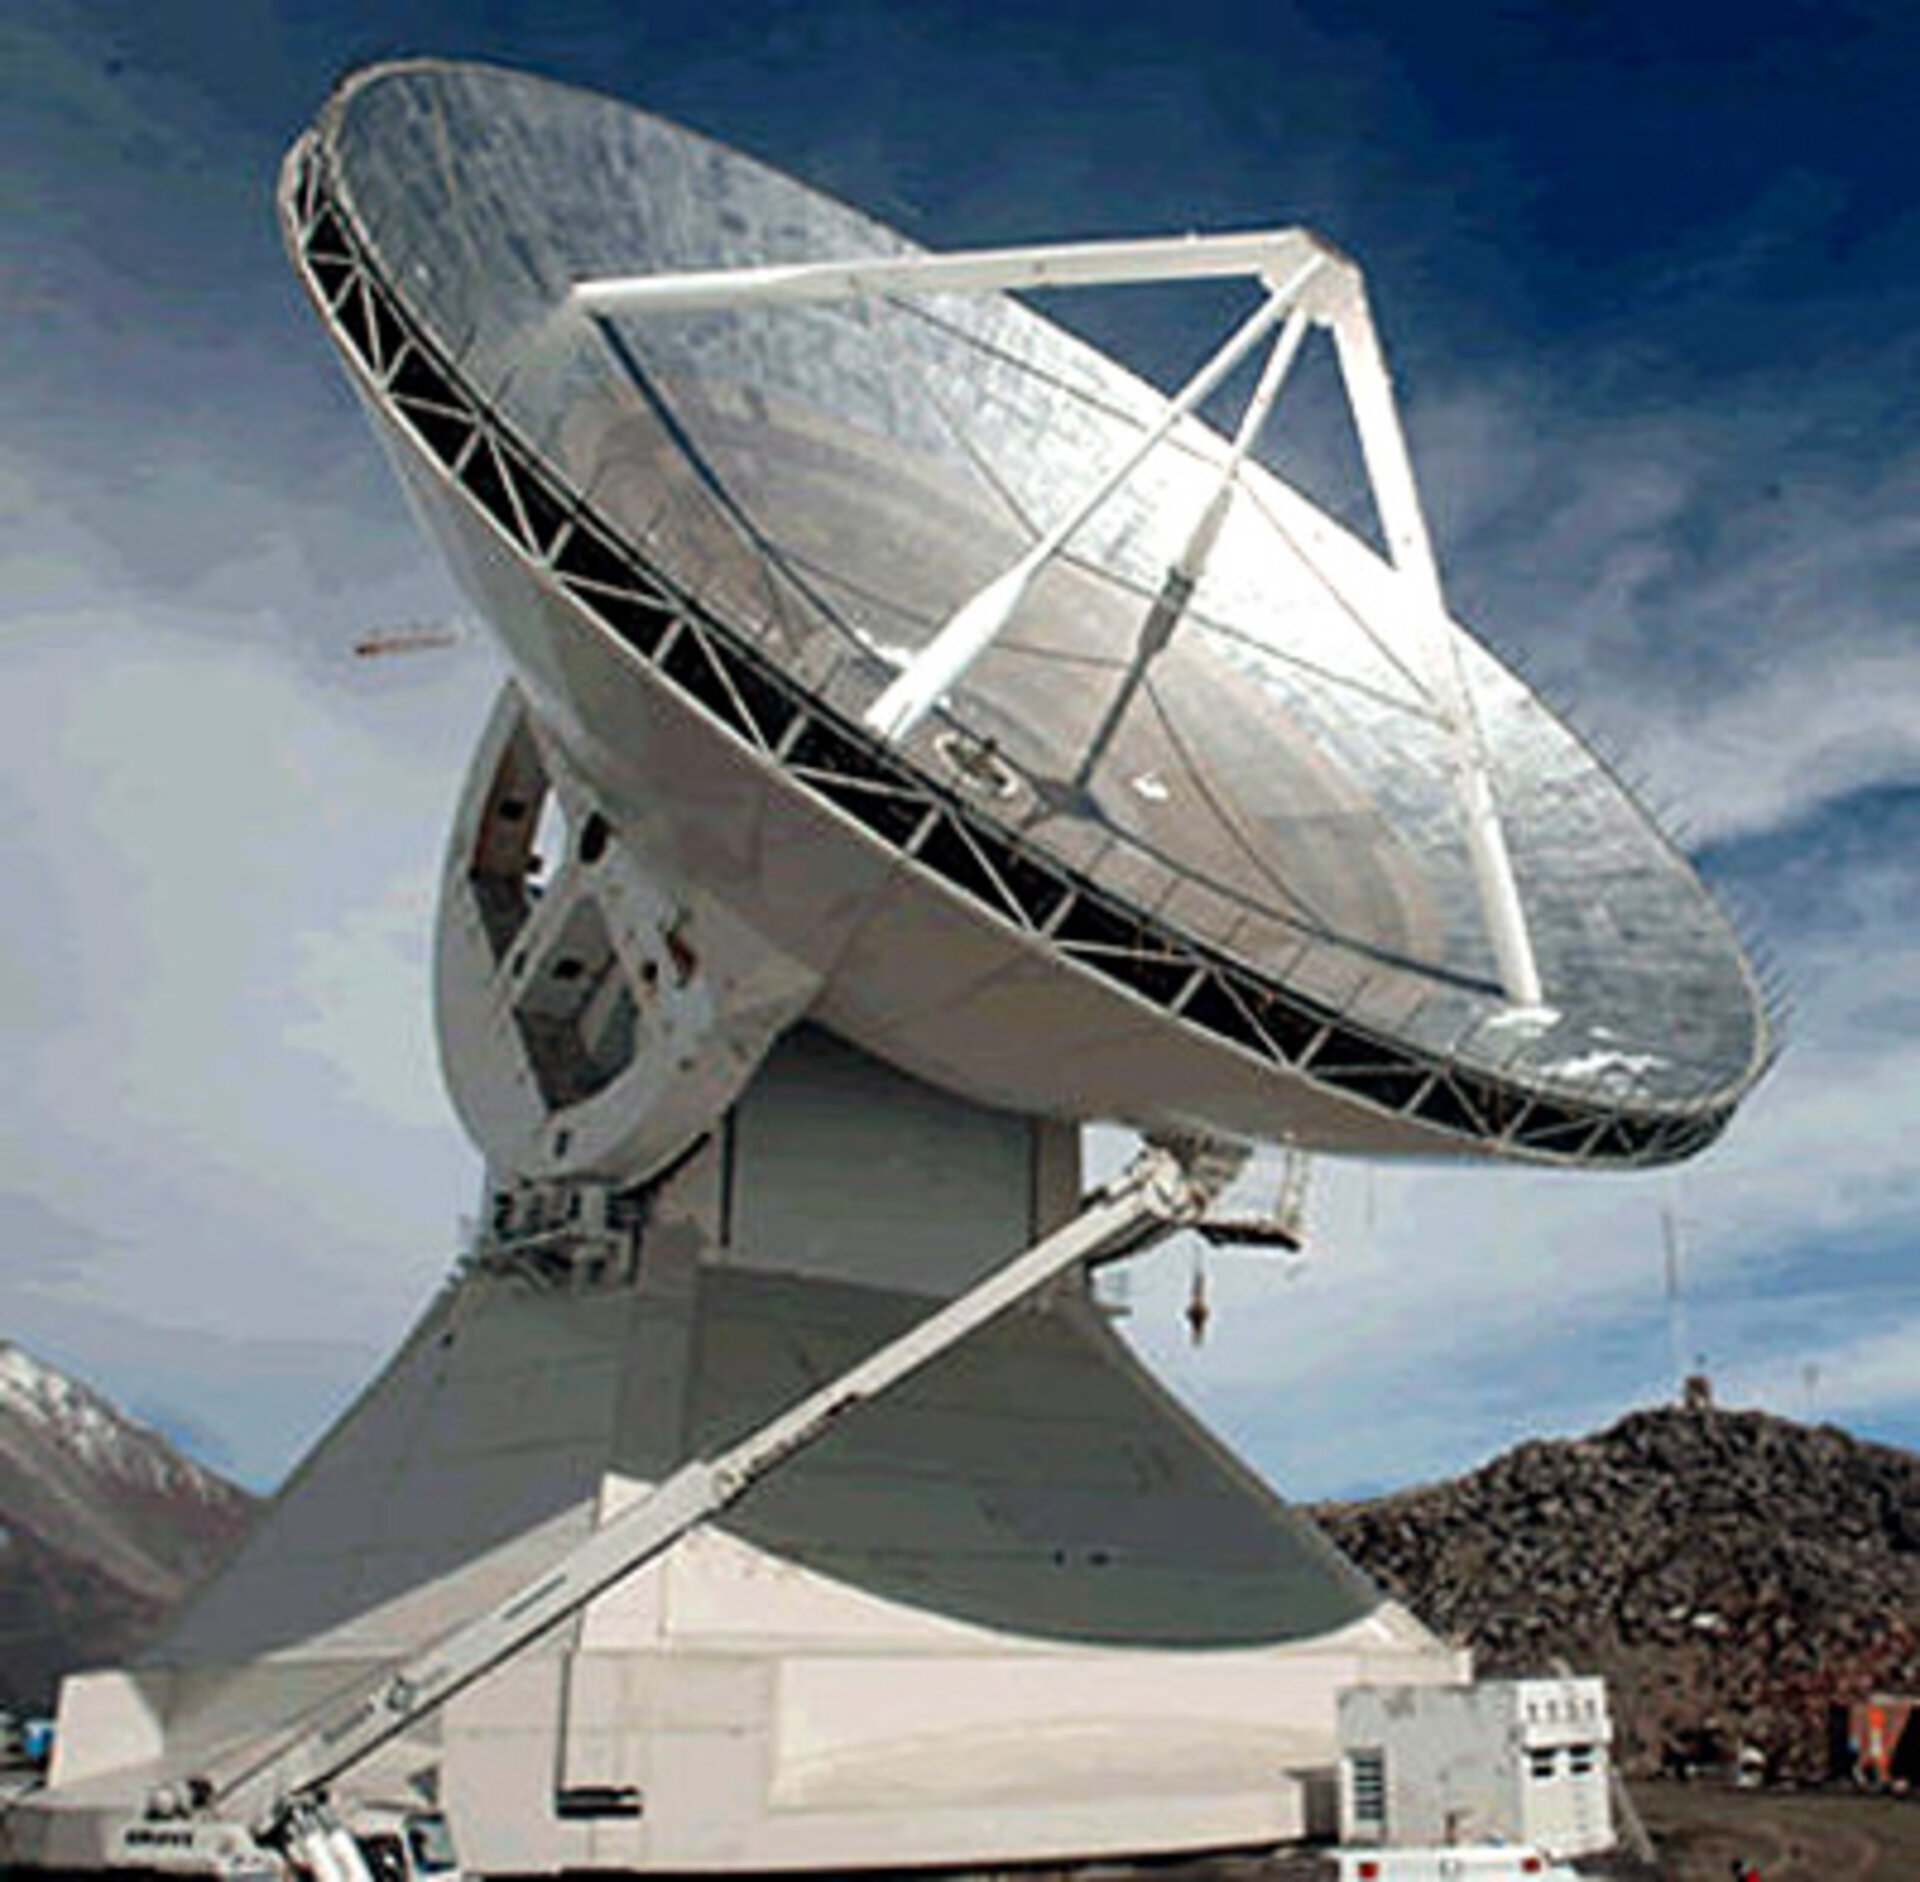 LMT telescope in Mexico